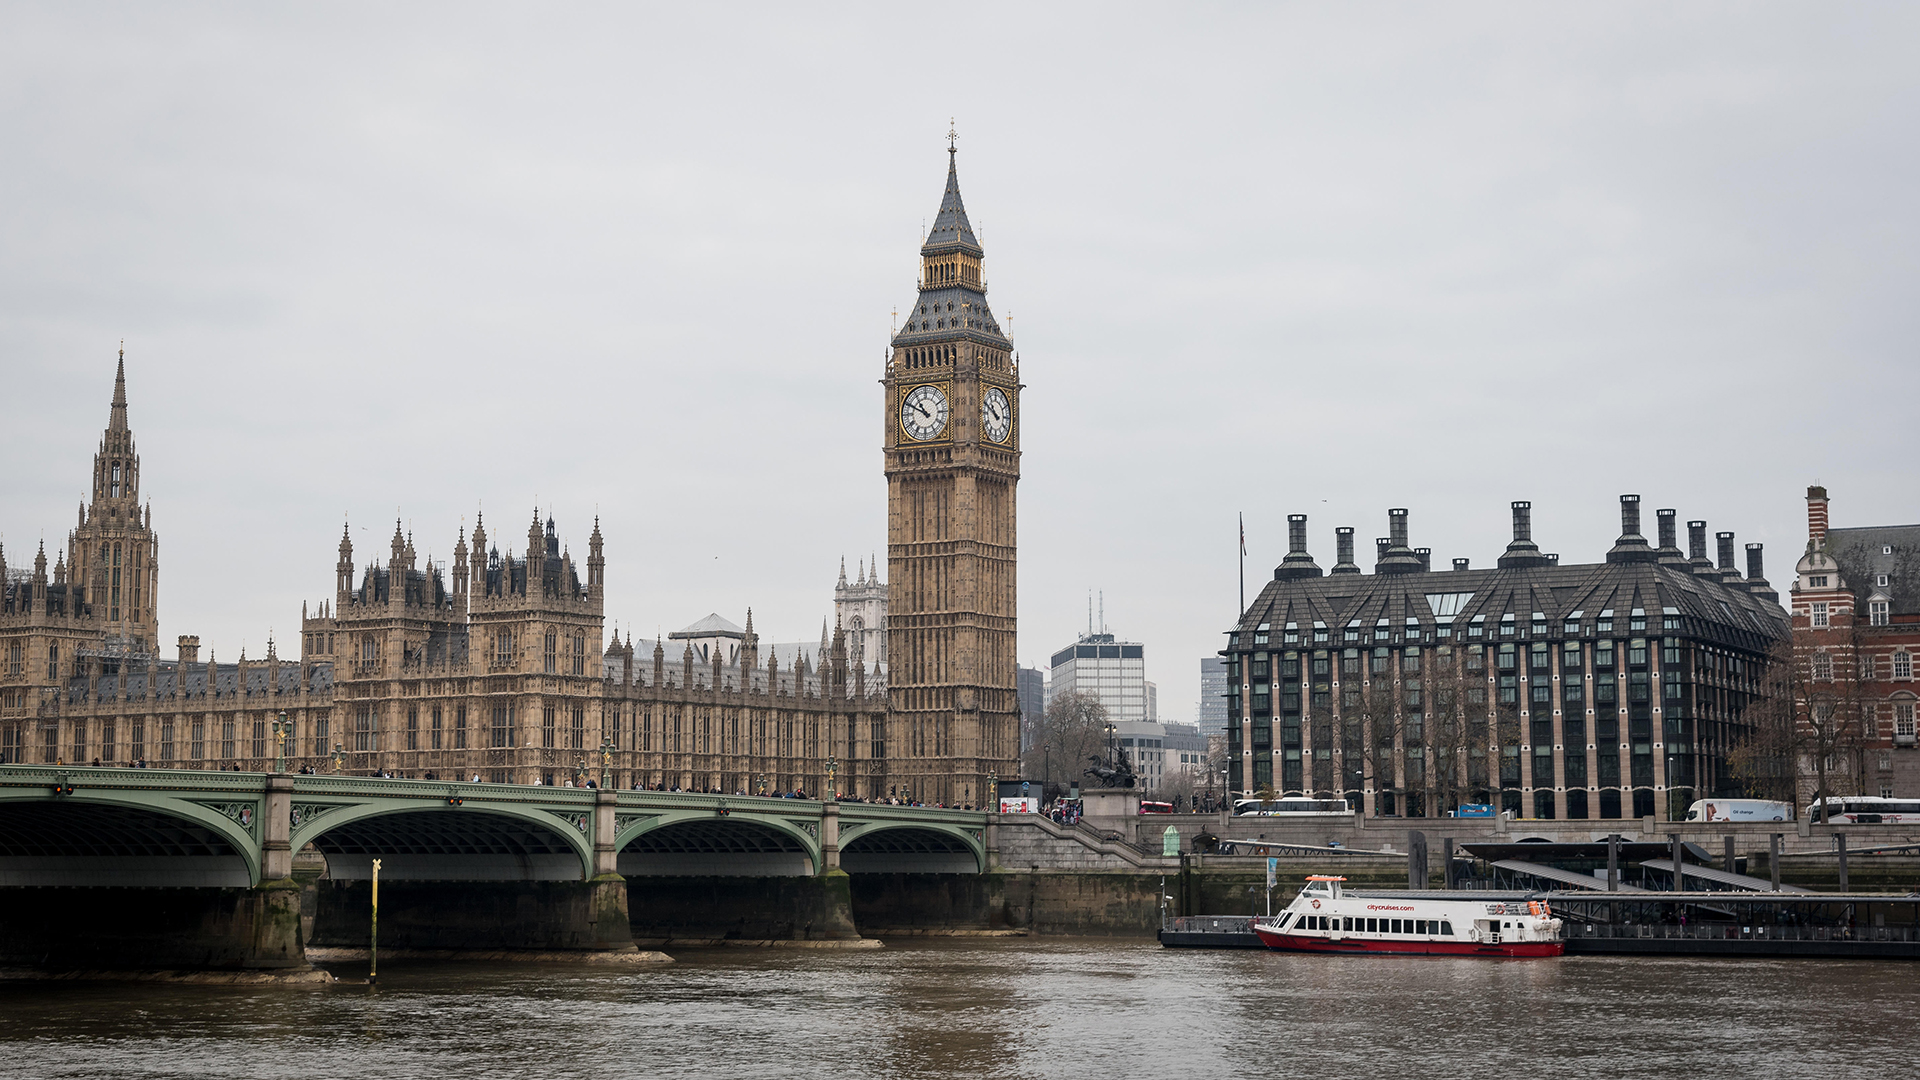 House of Parliament und Big Ben | picture alliance / Zoonar